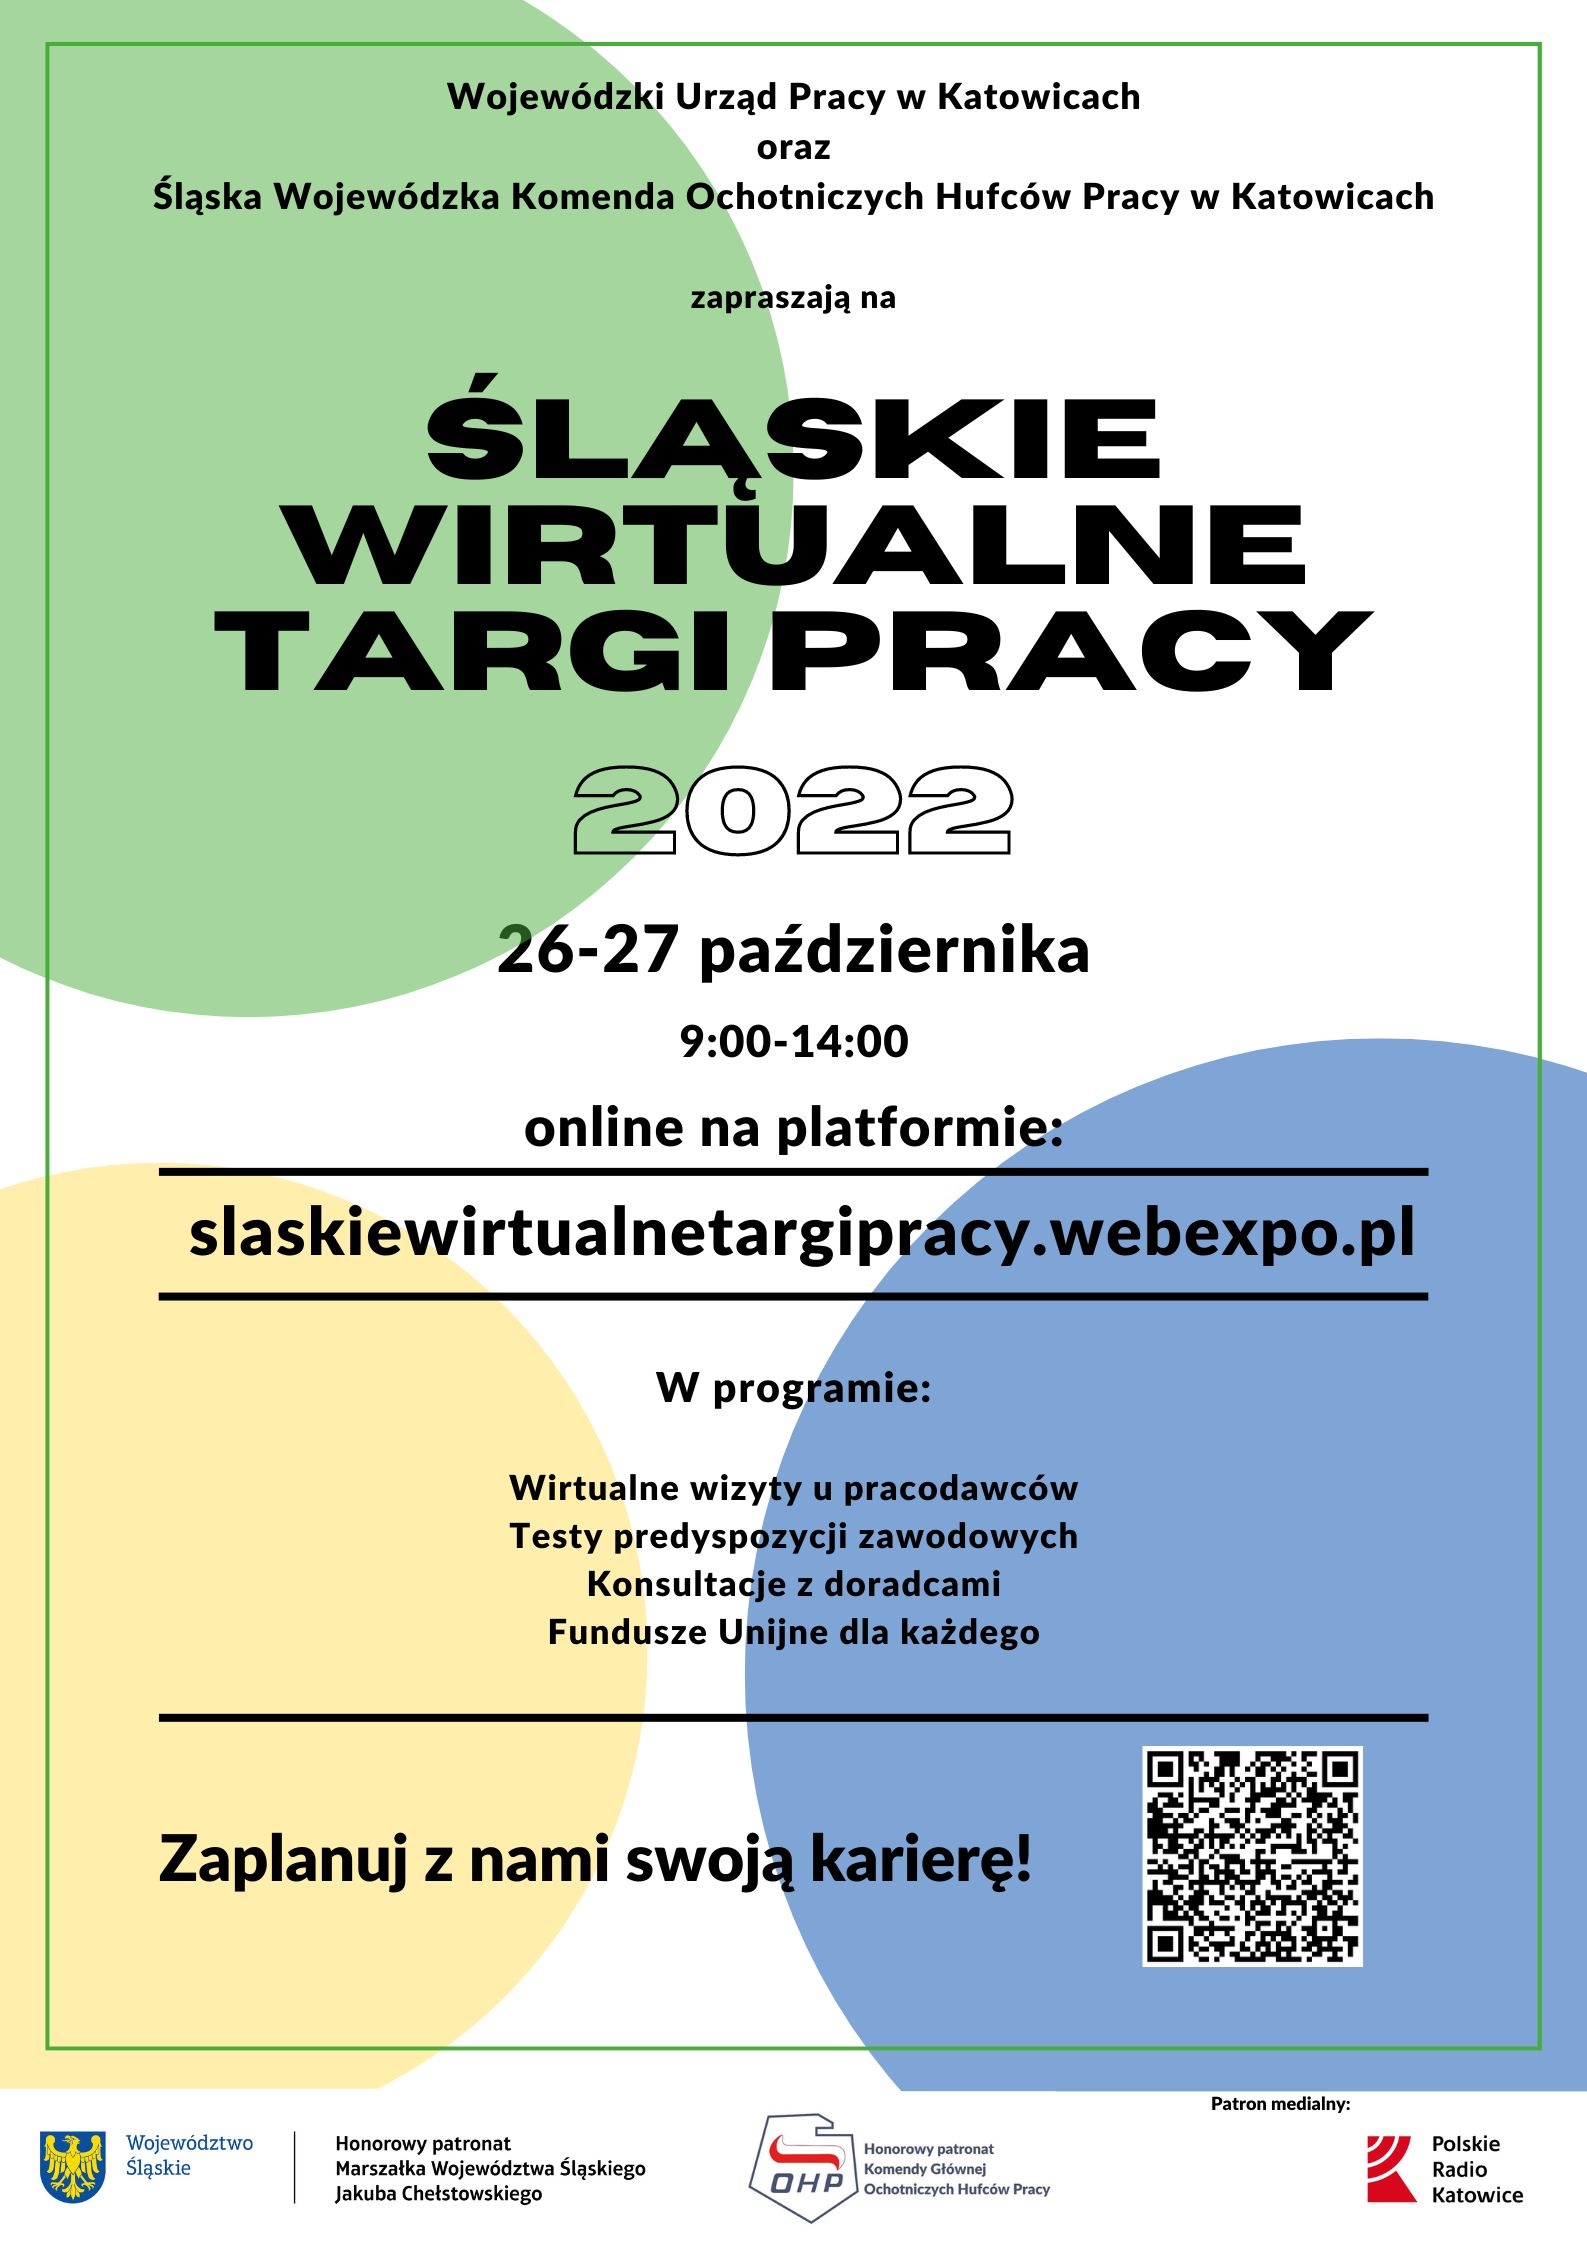 Plakat promujący Śląskie Wirtualne Targi Pracy